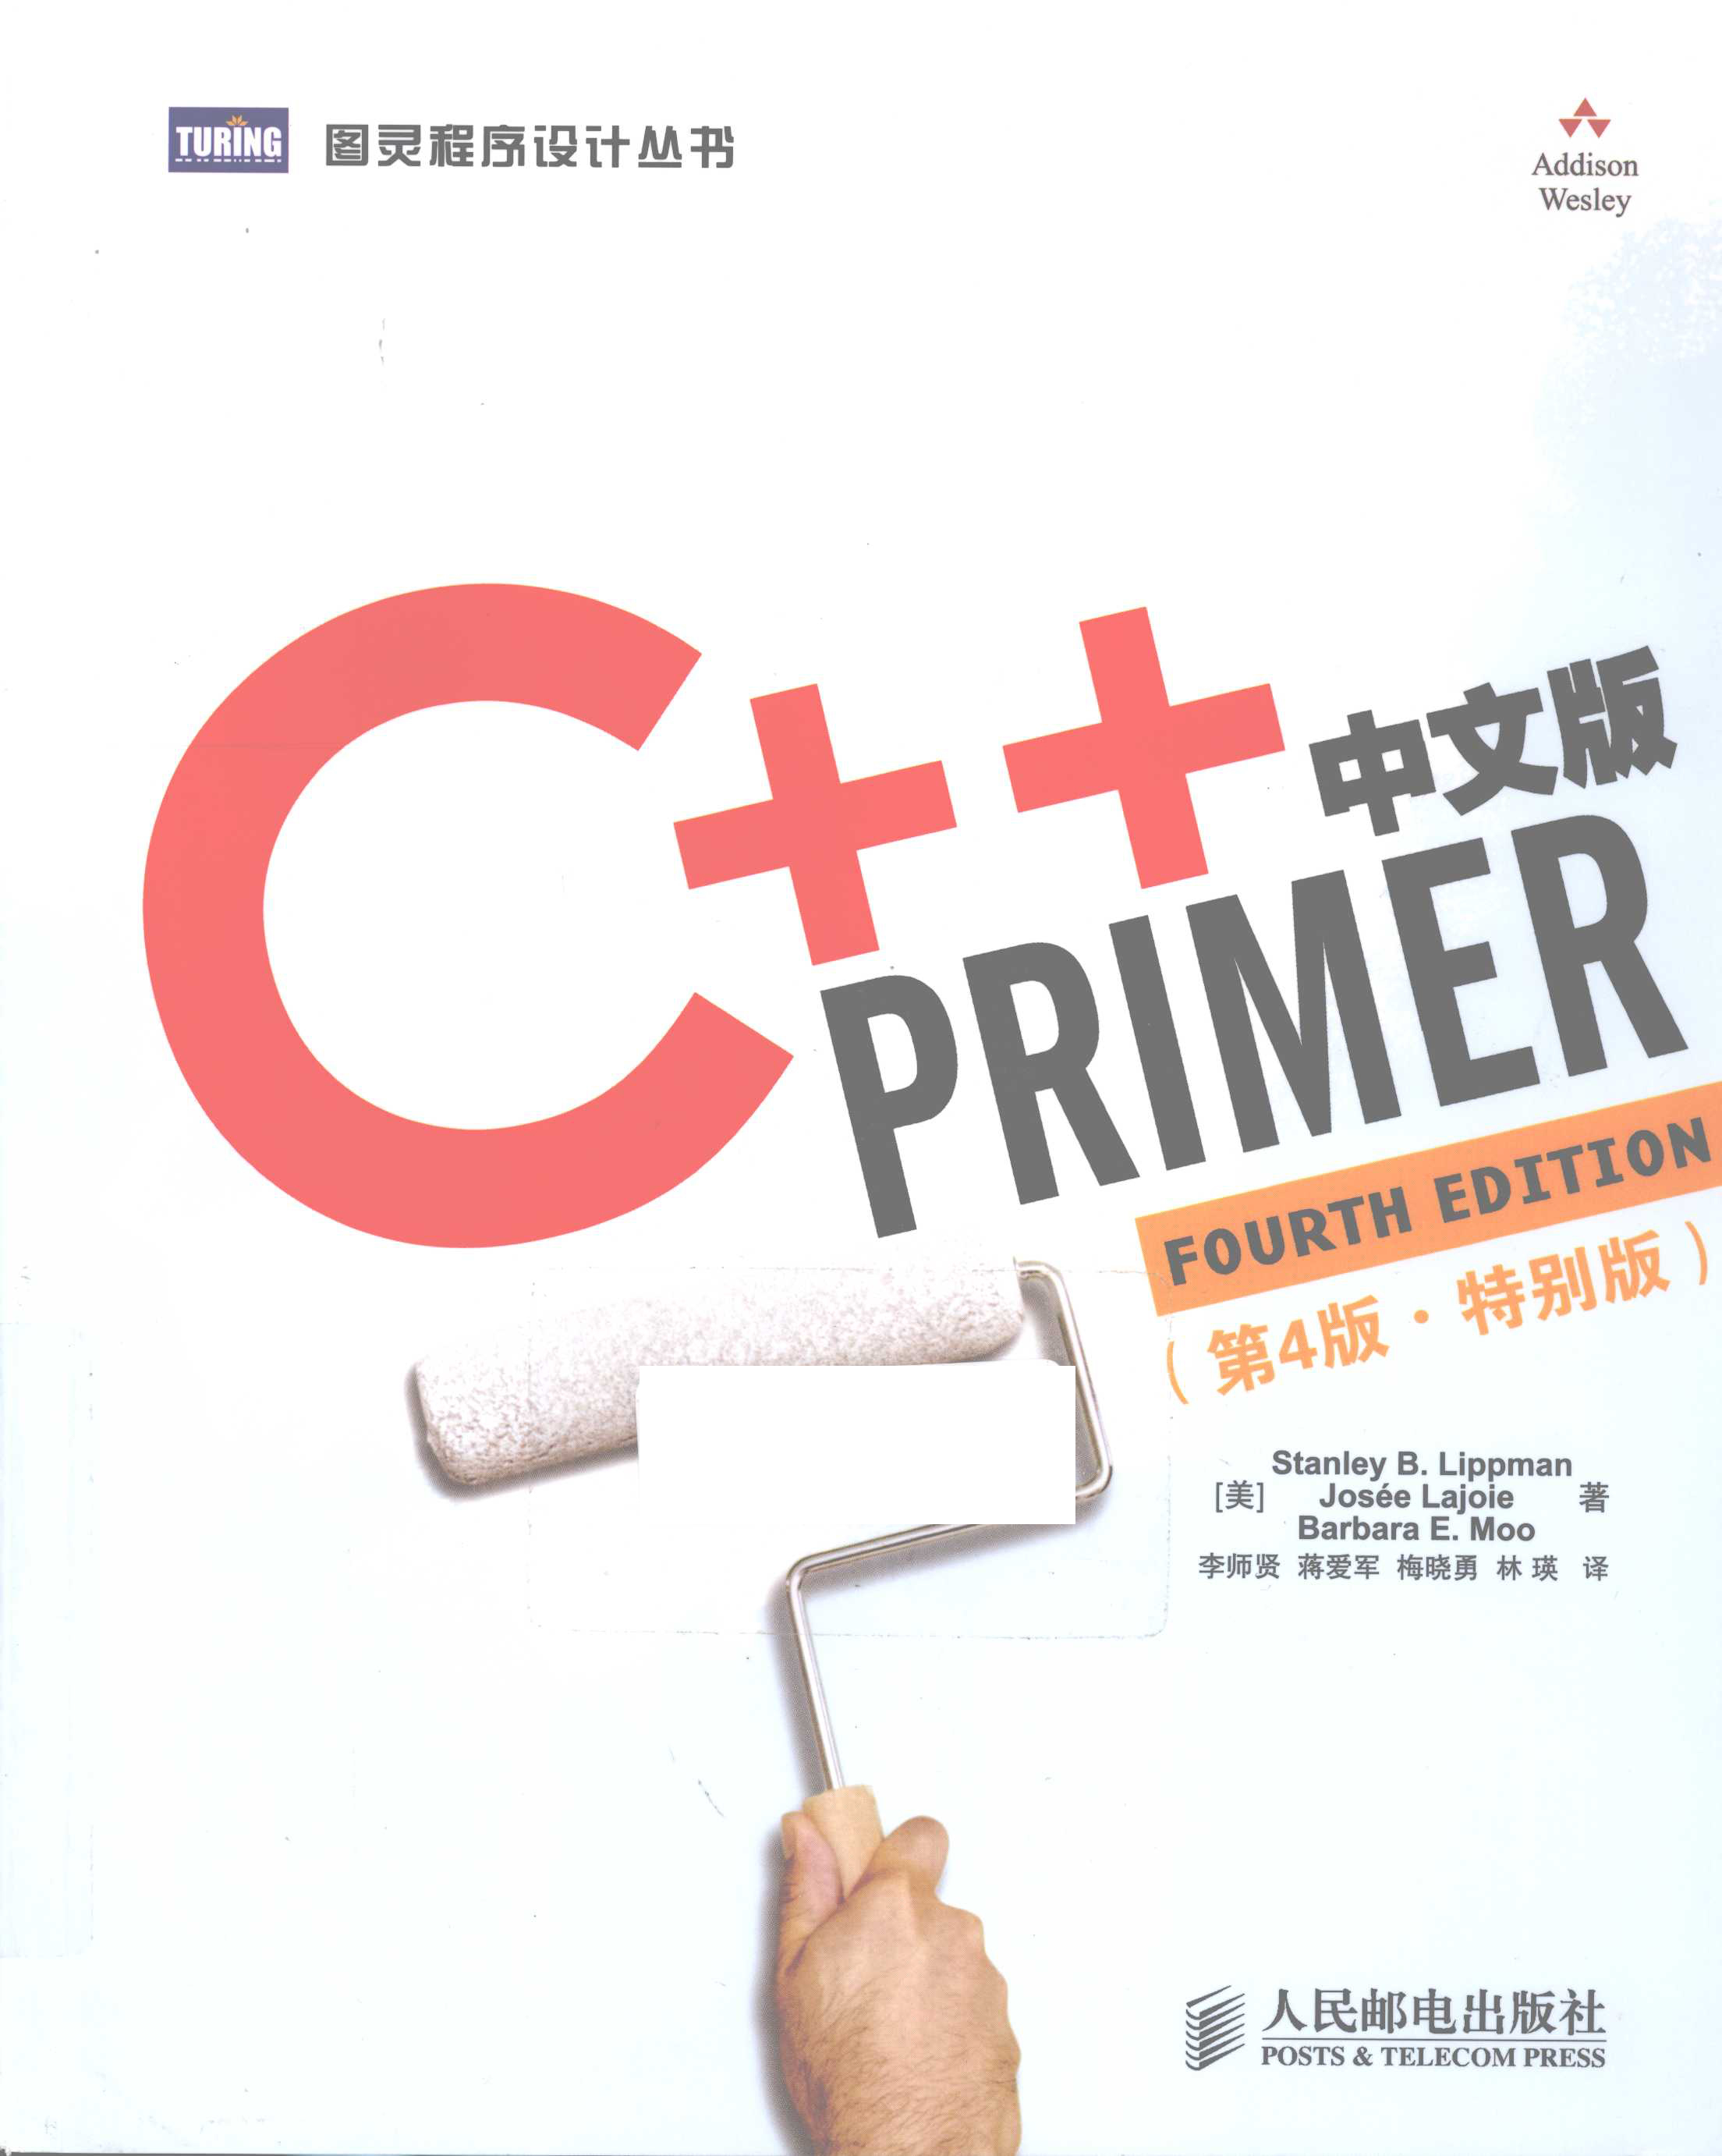 【电子书分享】C++ Primer 中文版 第4版 特别版 pdf 下载